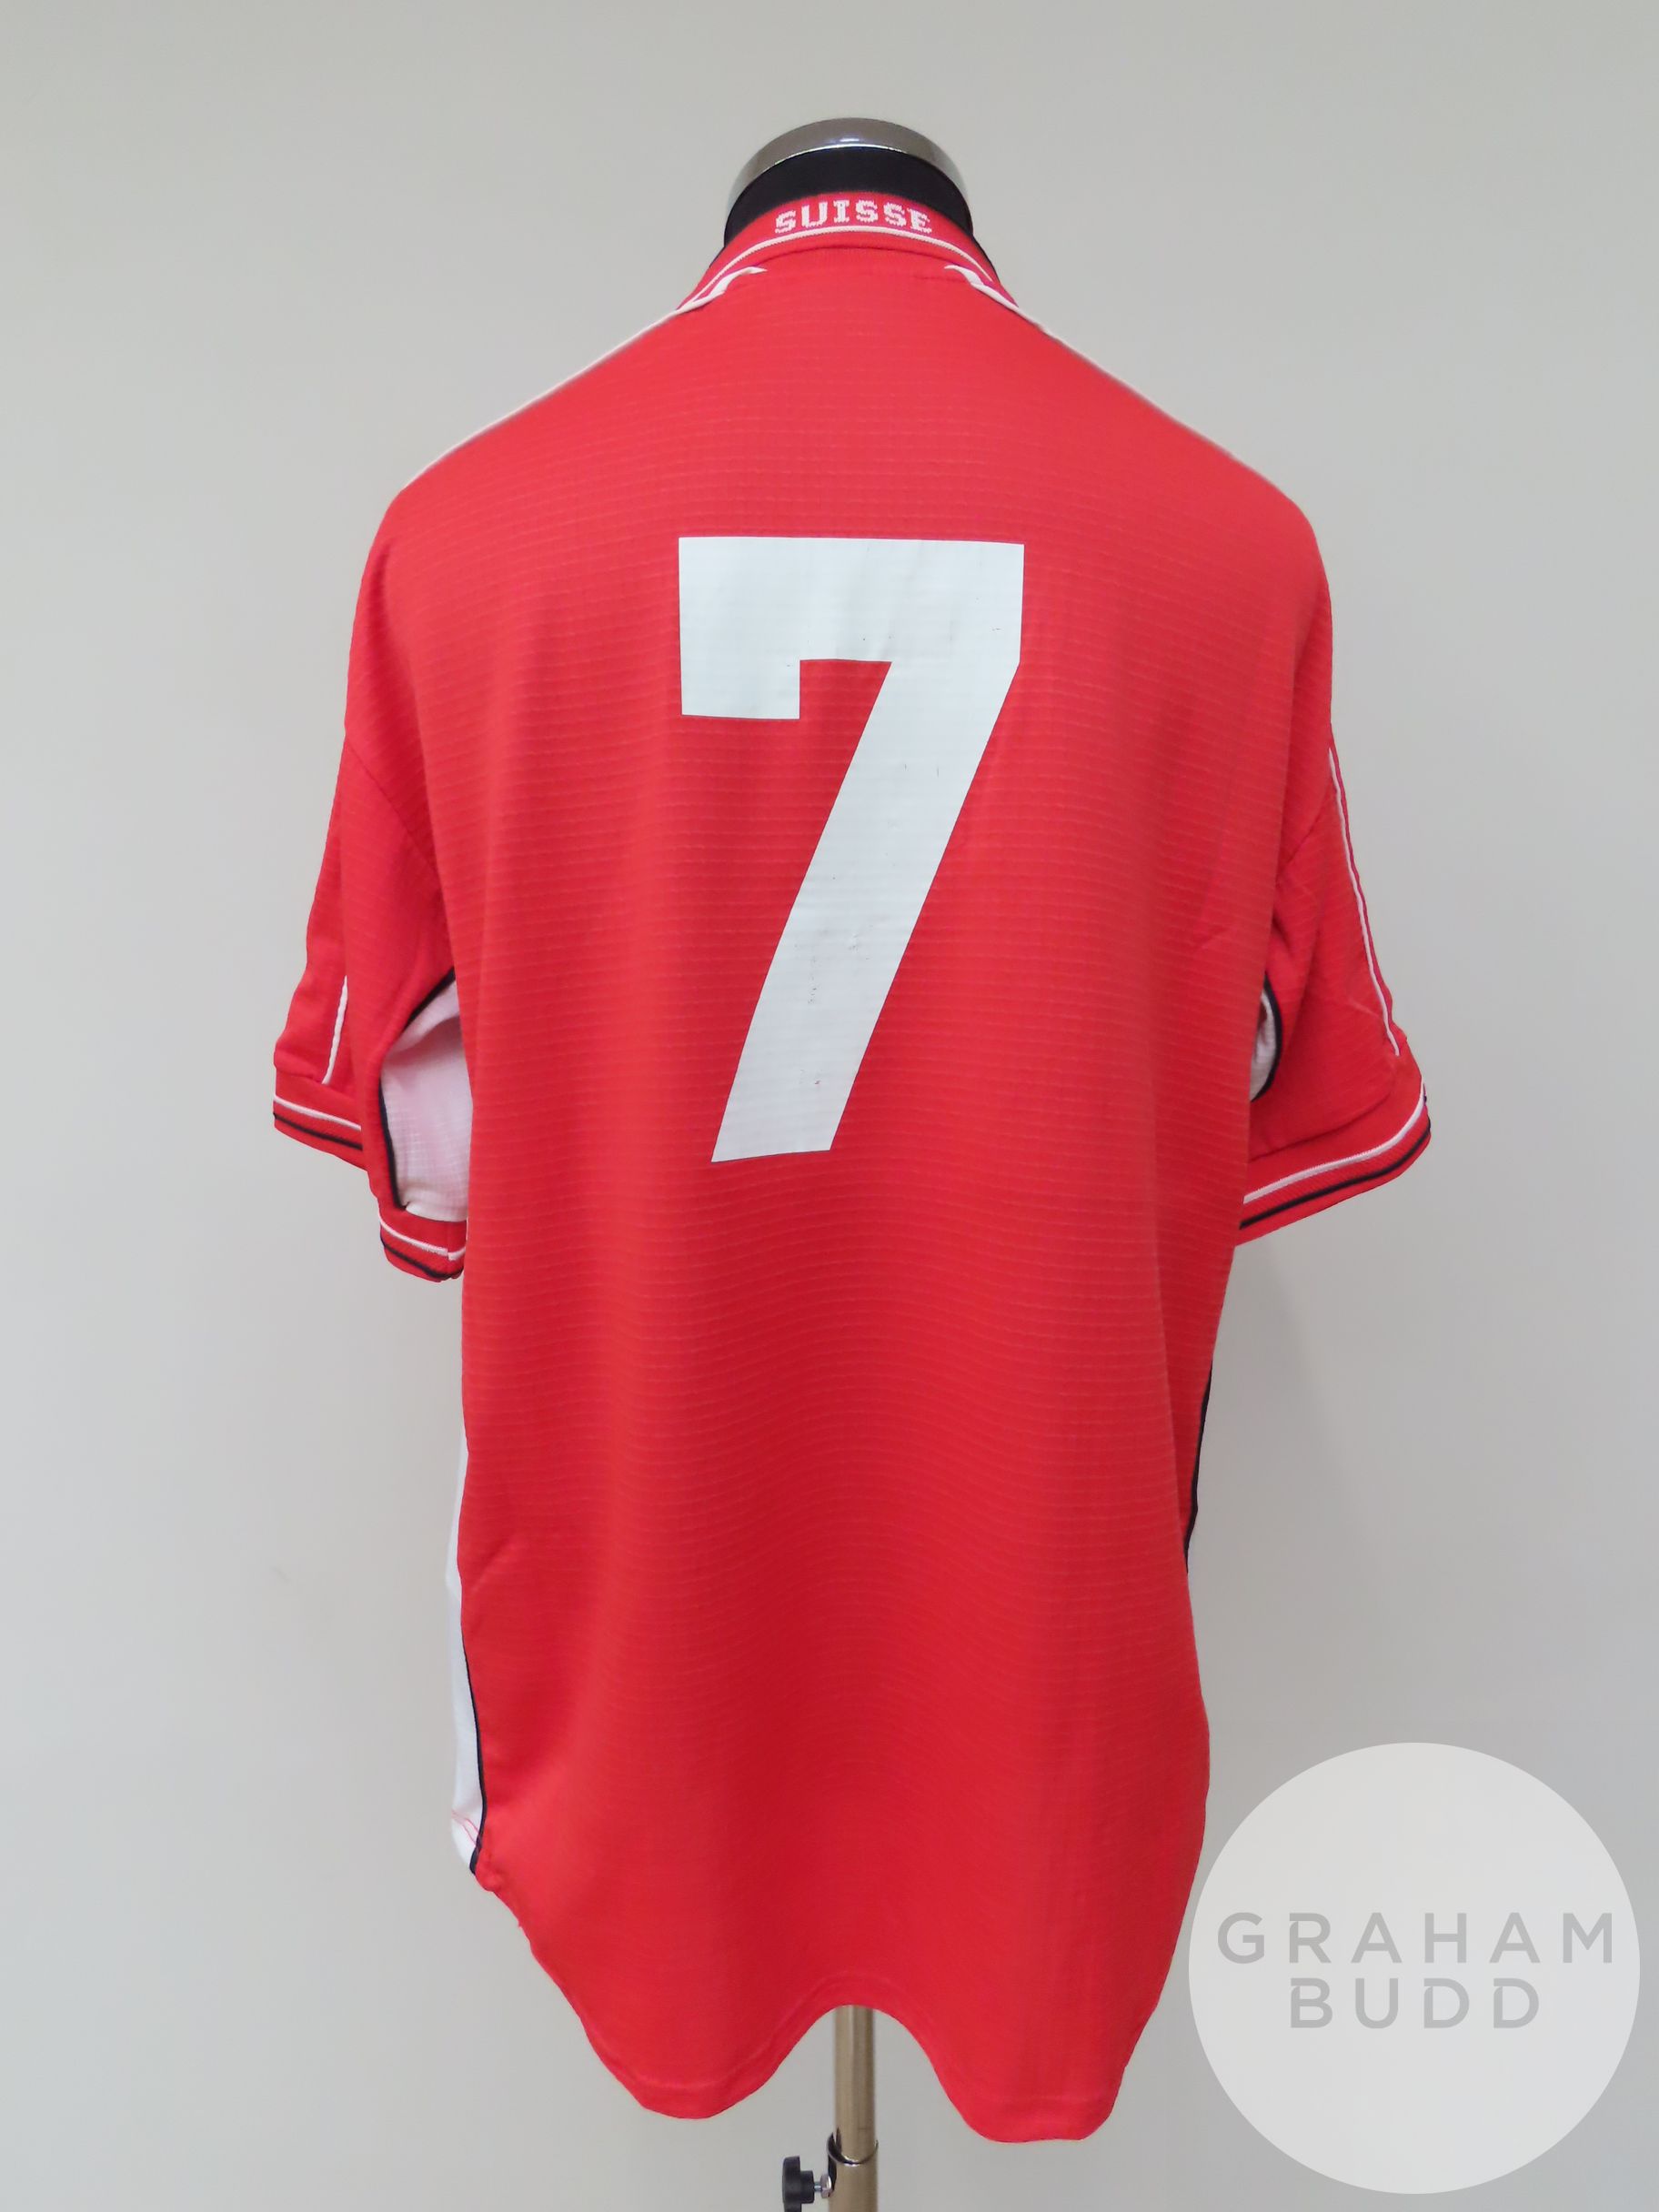 David Sesa red Switzerland no.7 shirt, 1999, - Image 2 of 2